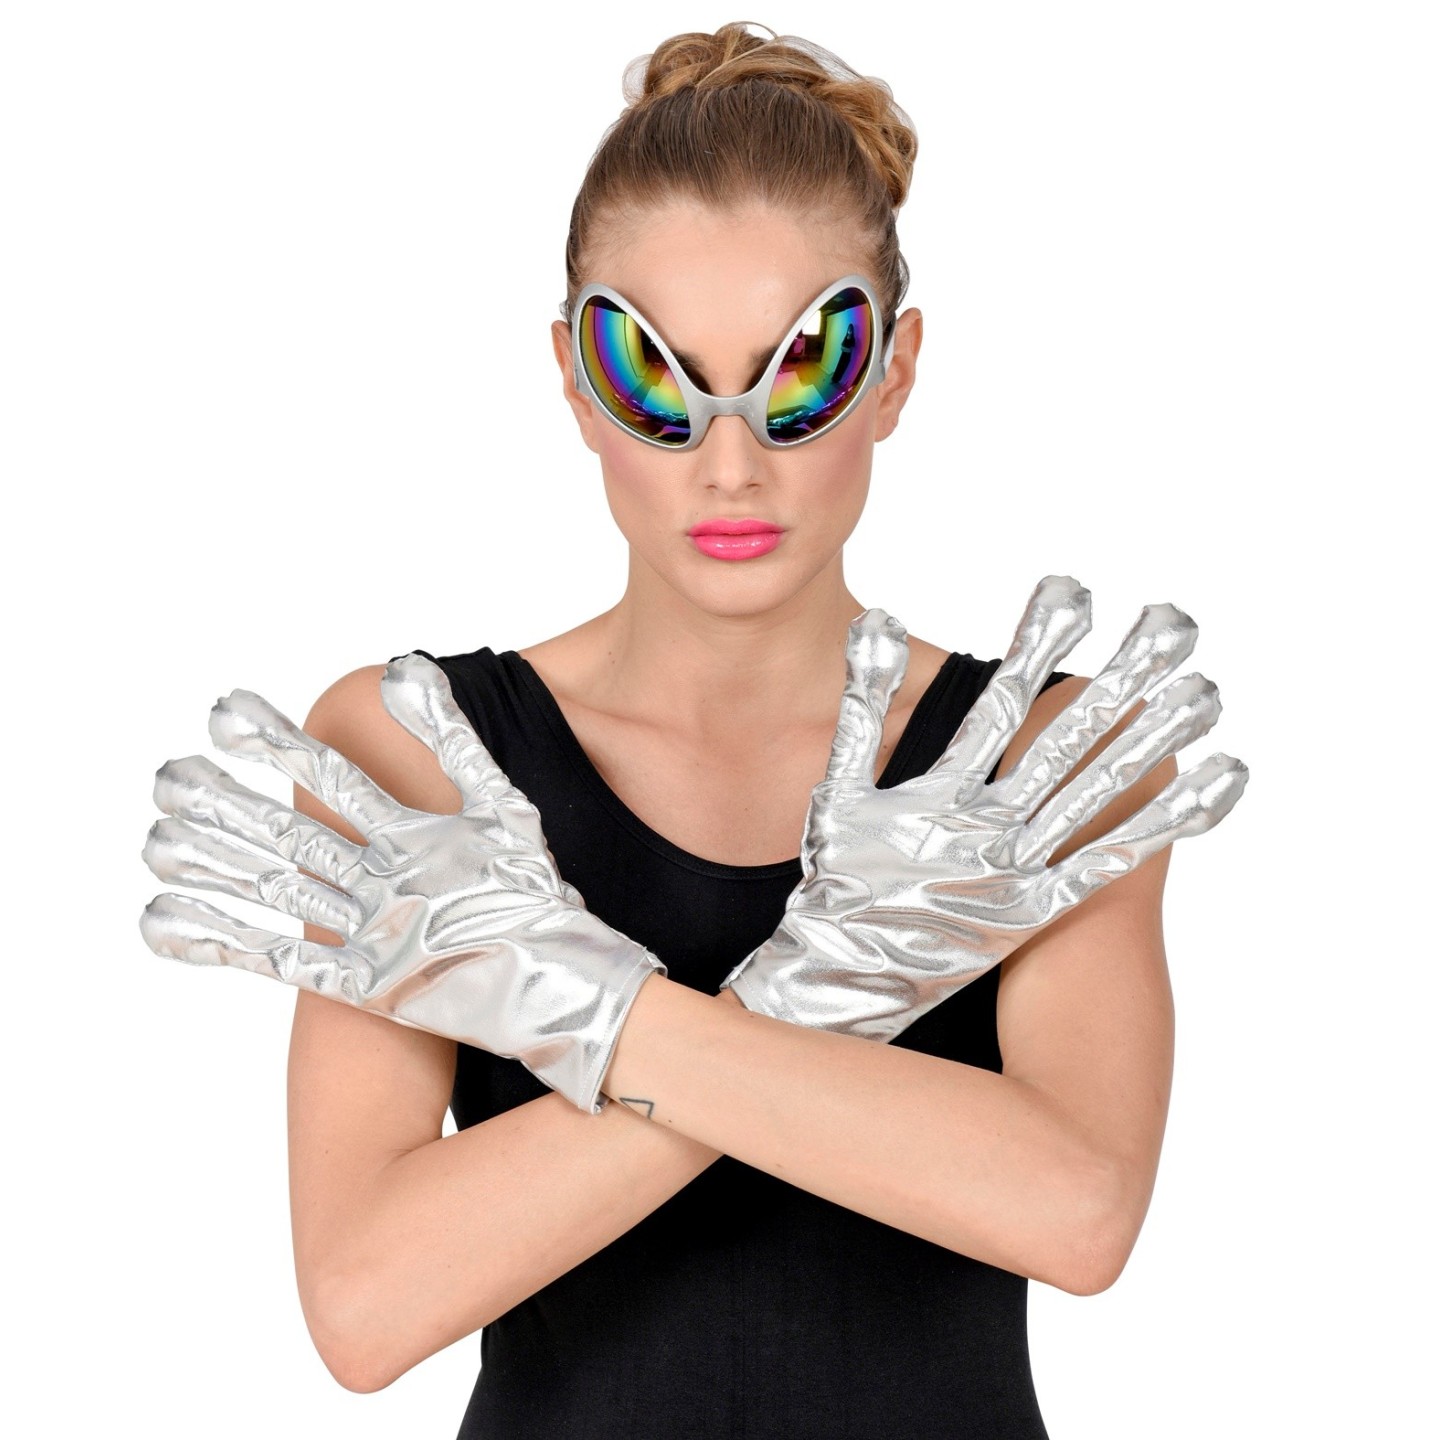 vervangen surfen bijvoorbeeld Alien handschoenen zilvber | Jokershop.be - Verkleedwinkel